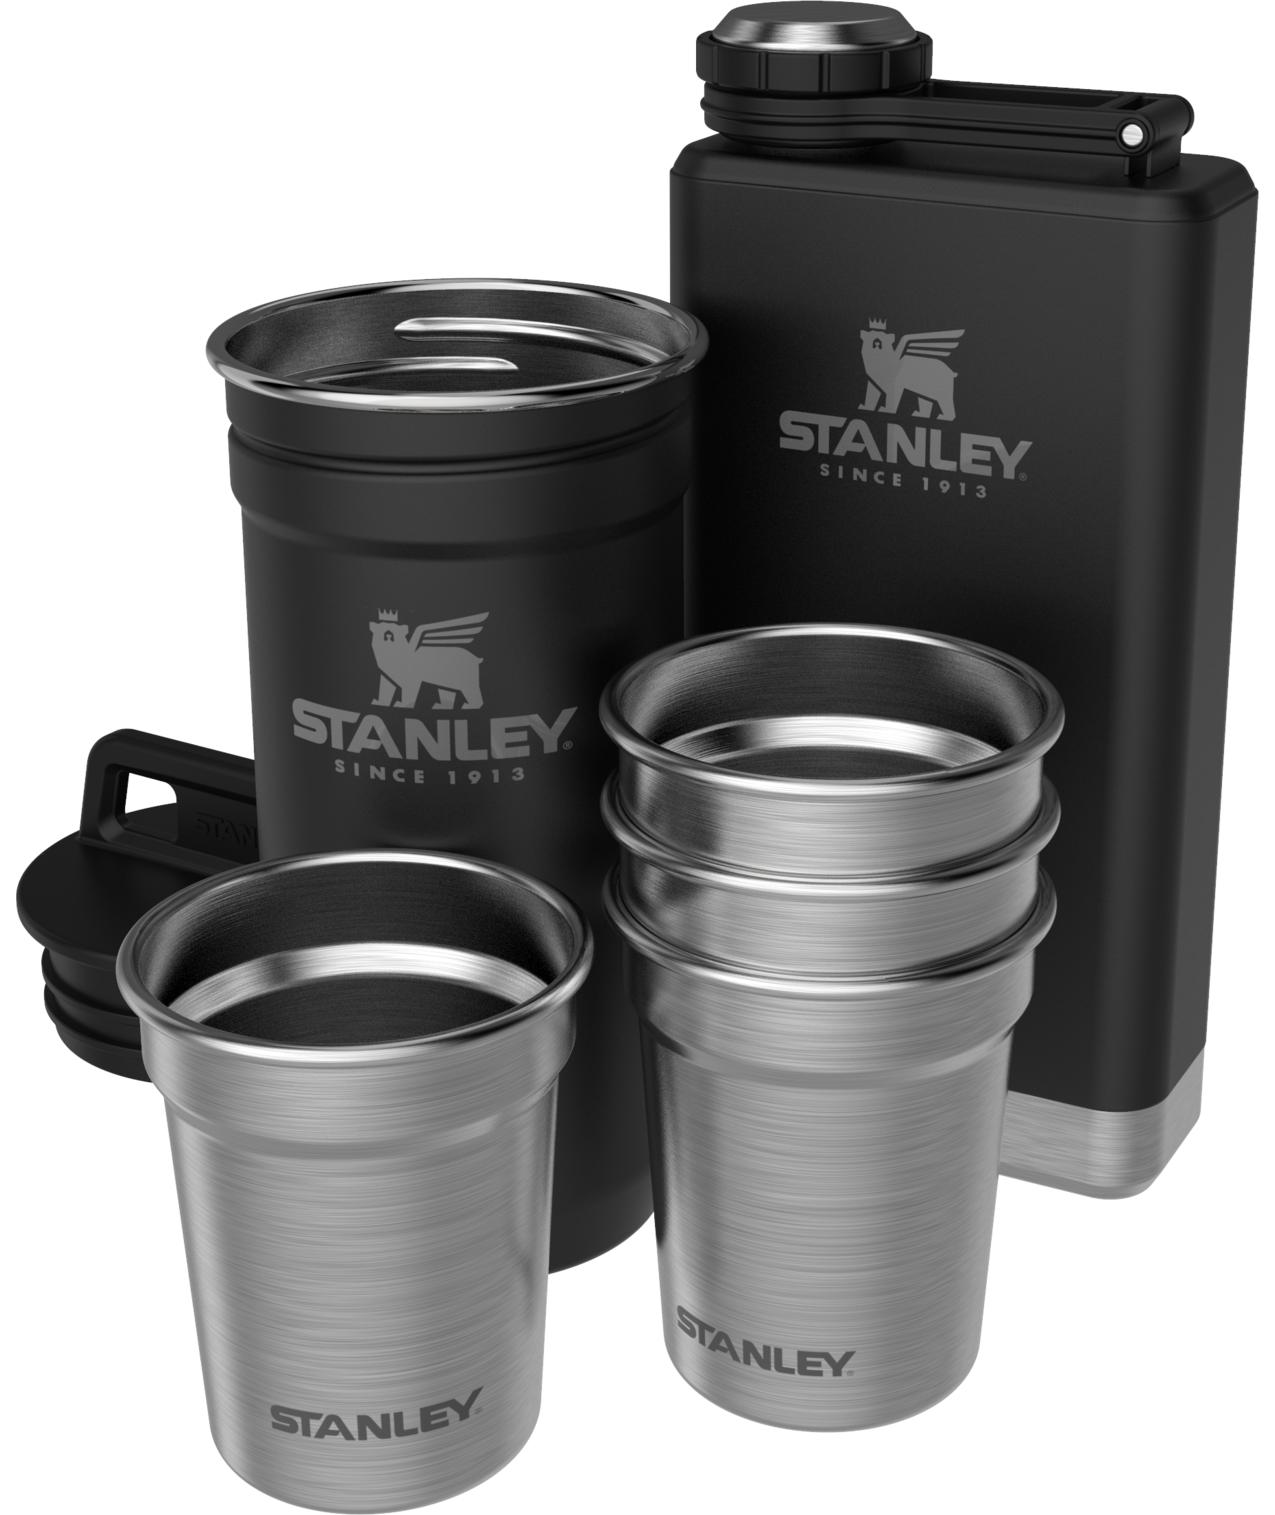 Stanley Hammertone Green 20 oz Nested Stainless Steel Shotglass Set